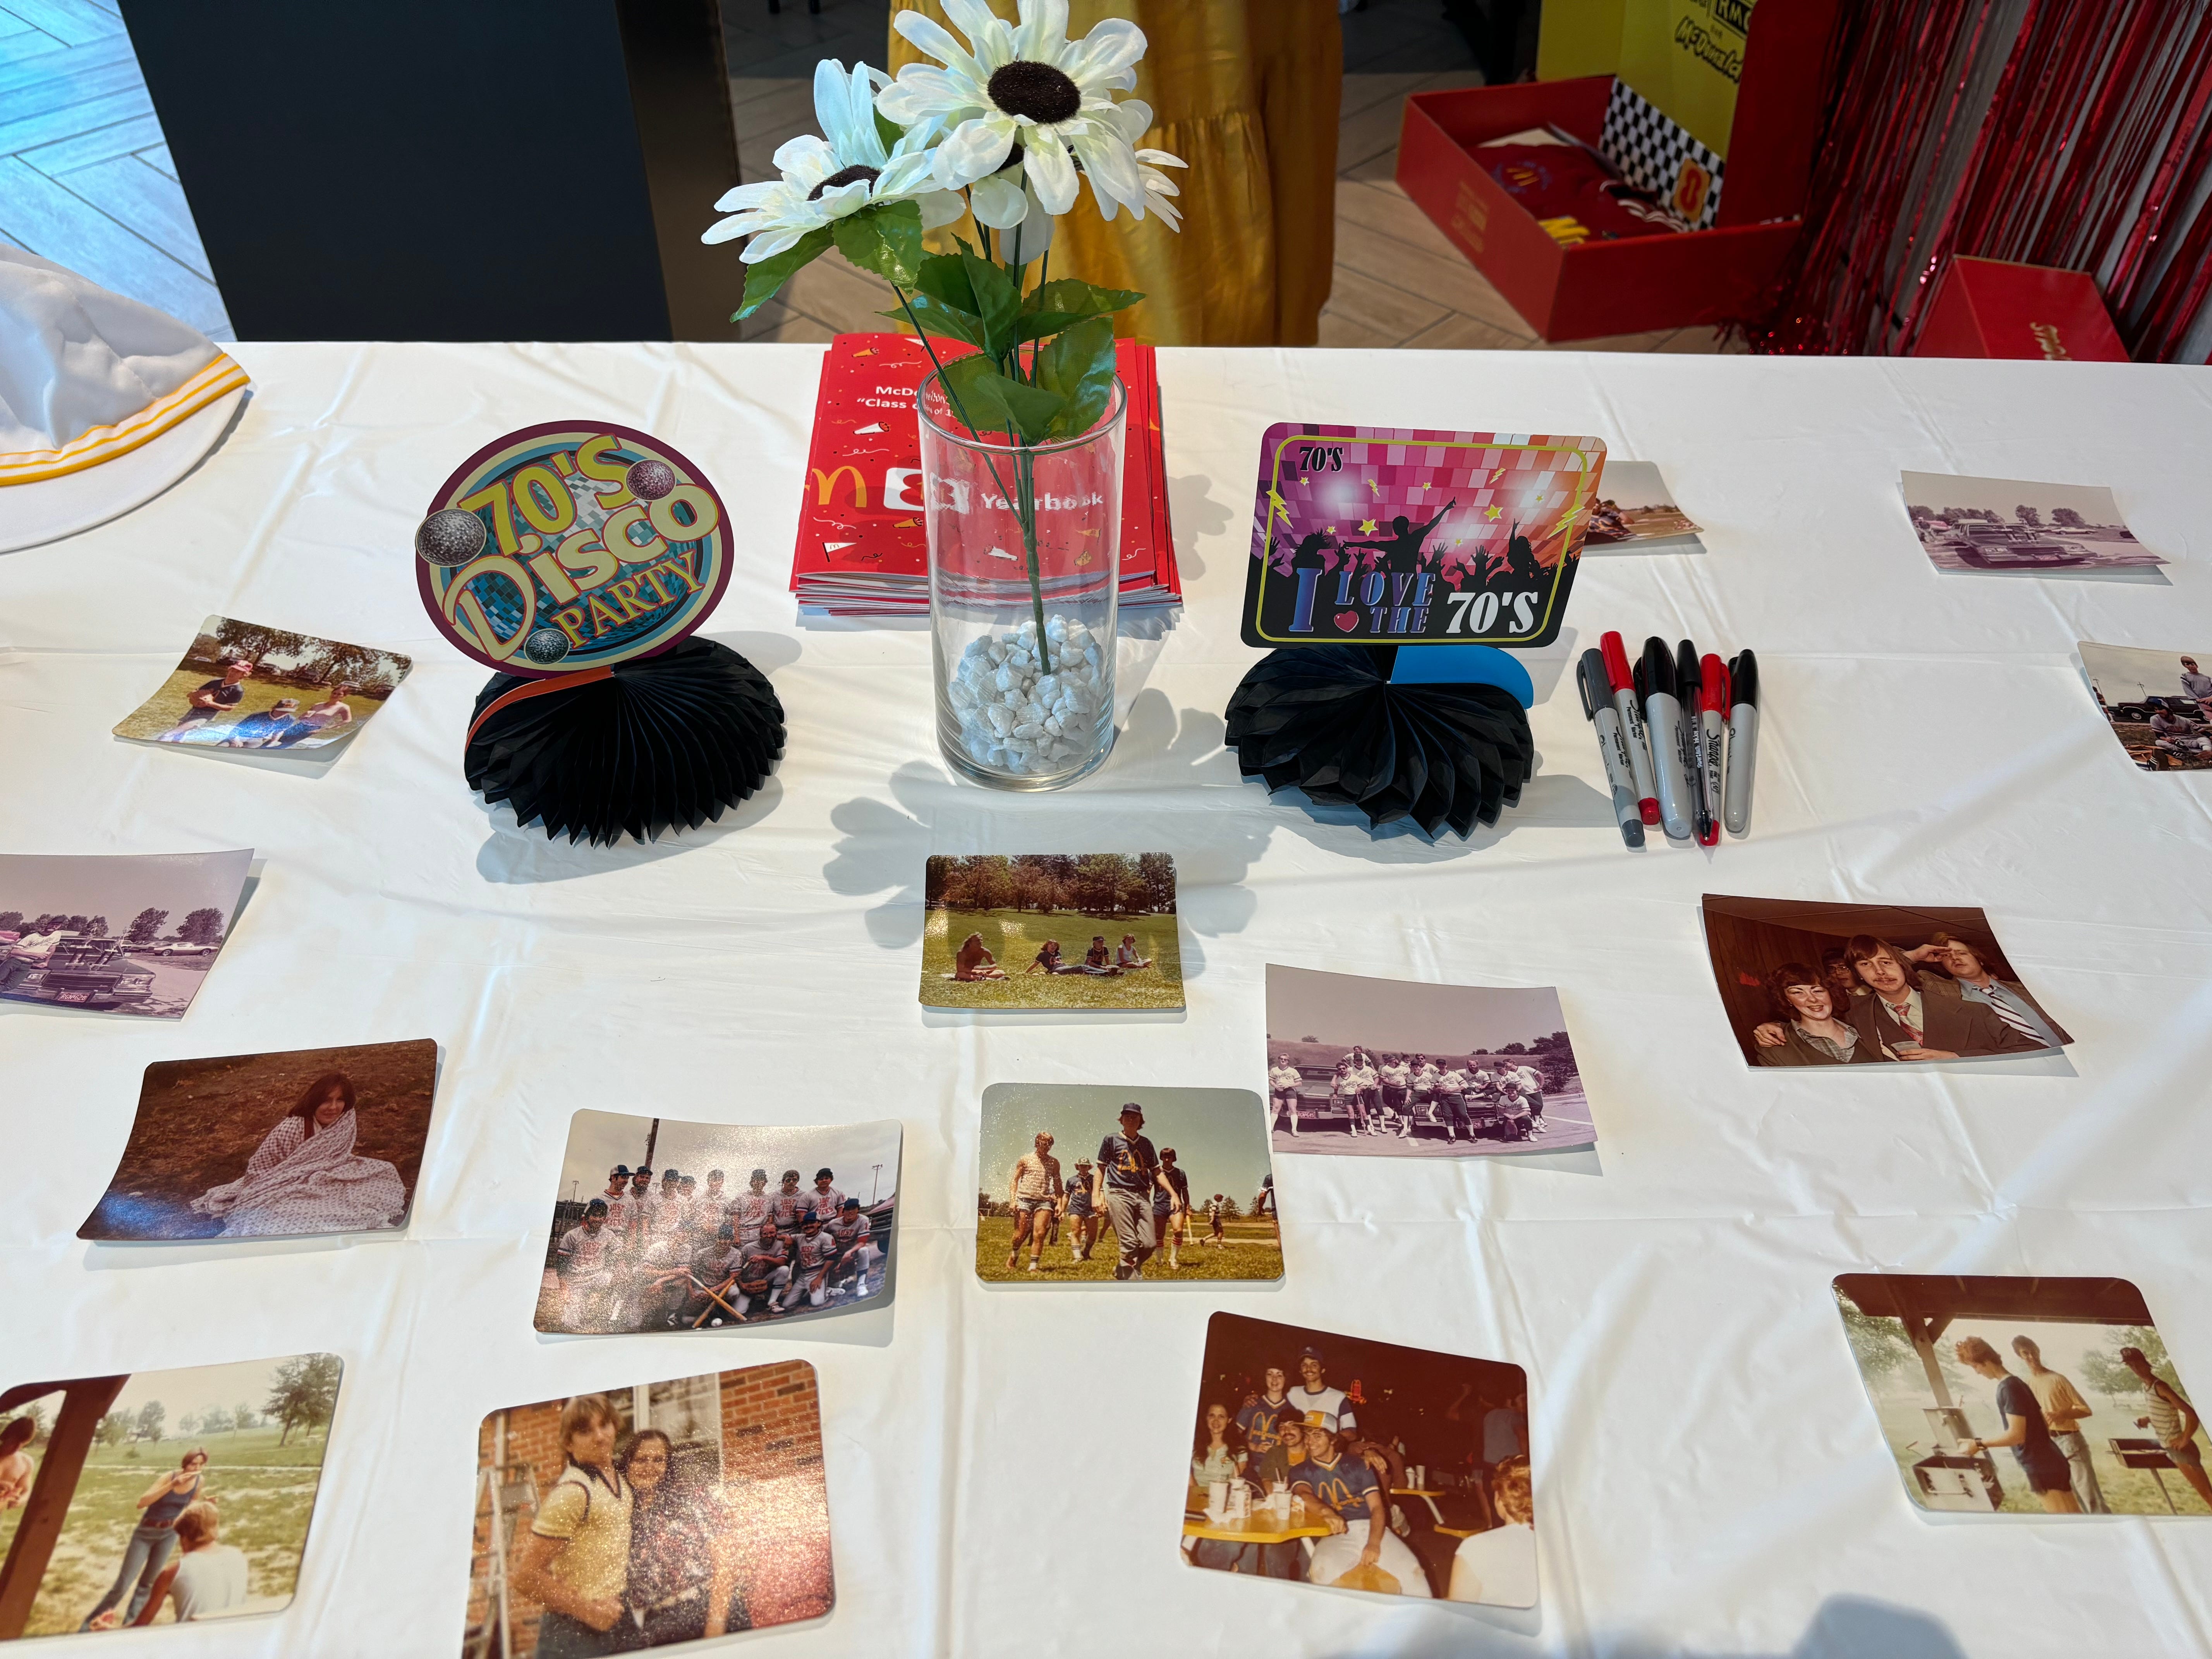 Ein Tisch, dekoriert mit Fotos ehemaliger McDonald's-Mitarbeiter und Gegenständen aus den 70er Jahren